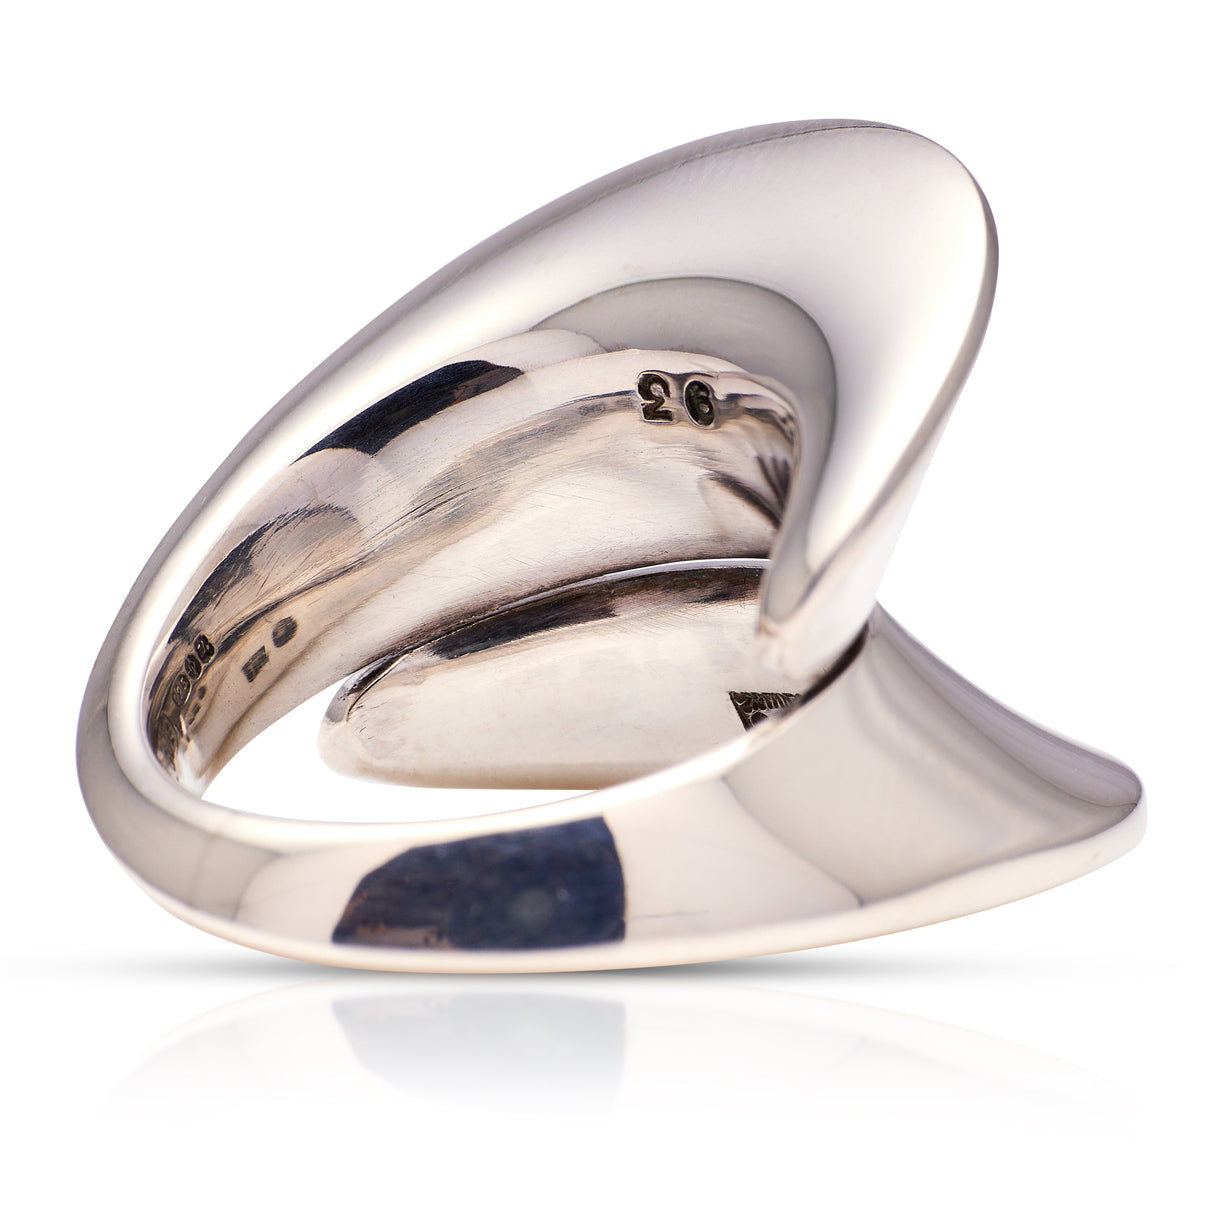 Georg Jensen | Impressive Sculptural Ring, Sterling Silver